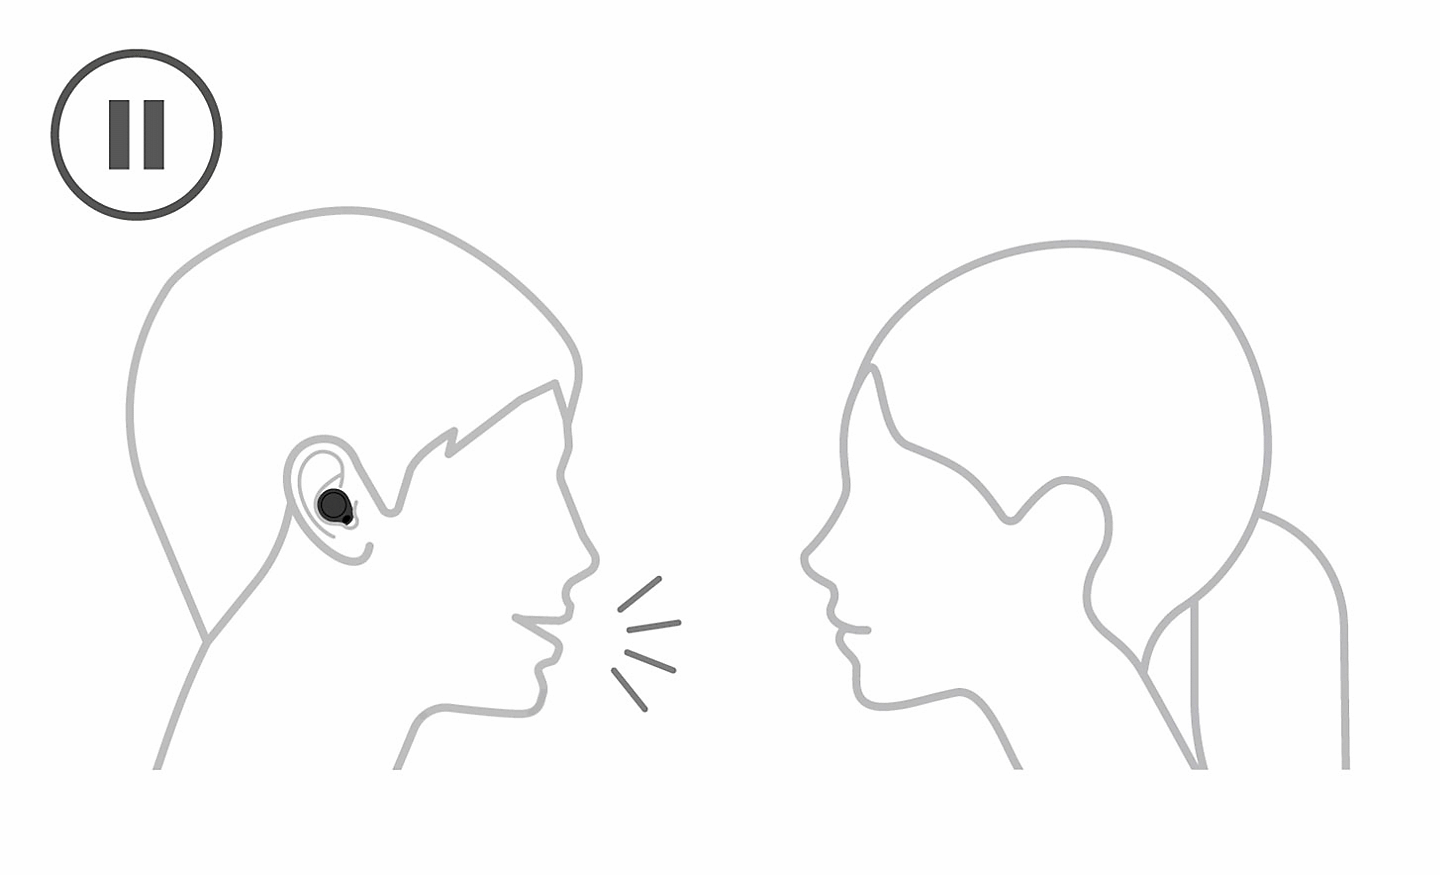 Desenho de linha de uma pessoa que está a usar auscultadores a conversar com uma pessoa sem auscultadores. É apresentado um ícone de pausa no canto superior esquerdo